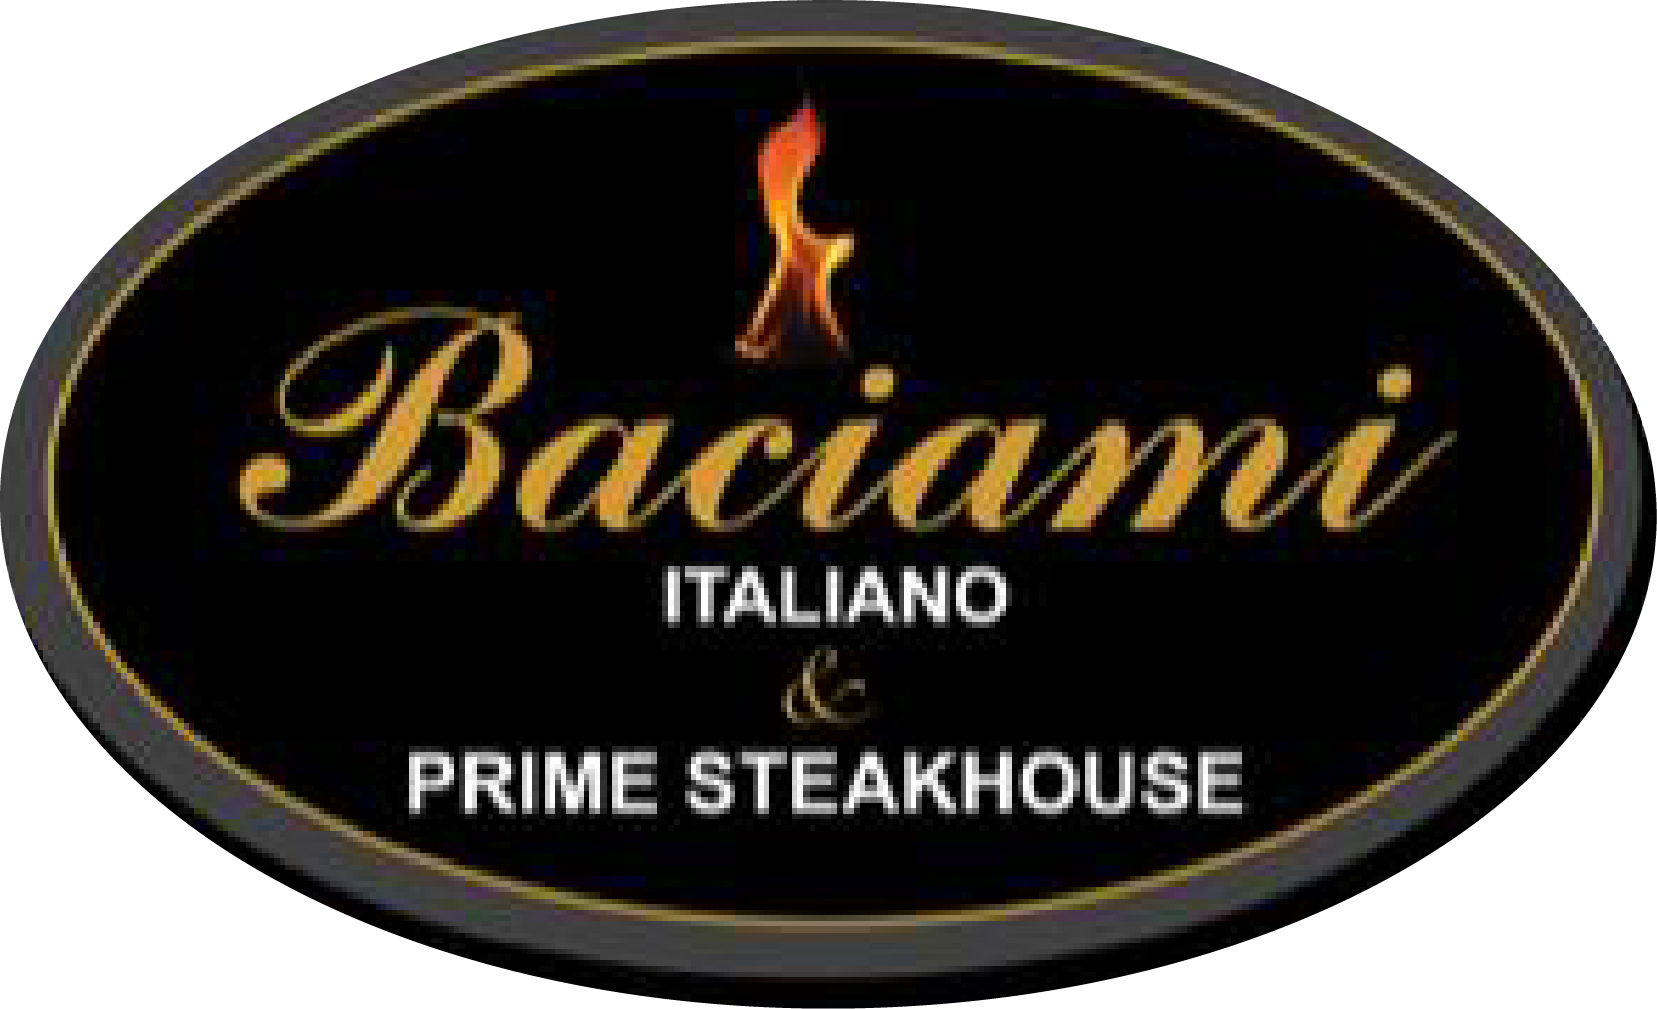 Baciami Italiano & Prime Steak Home